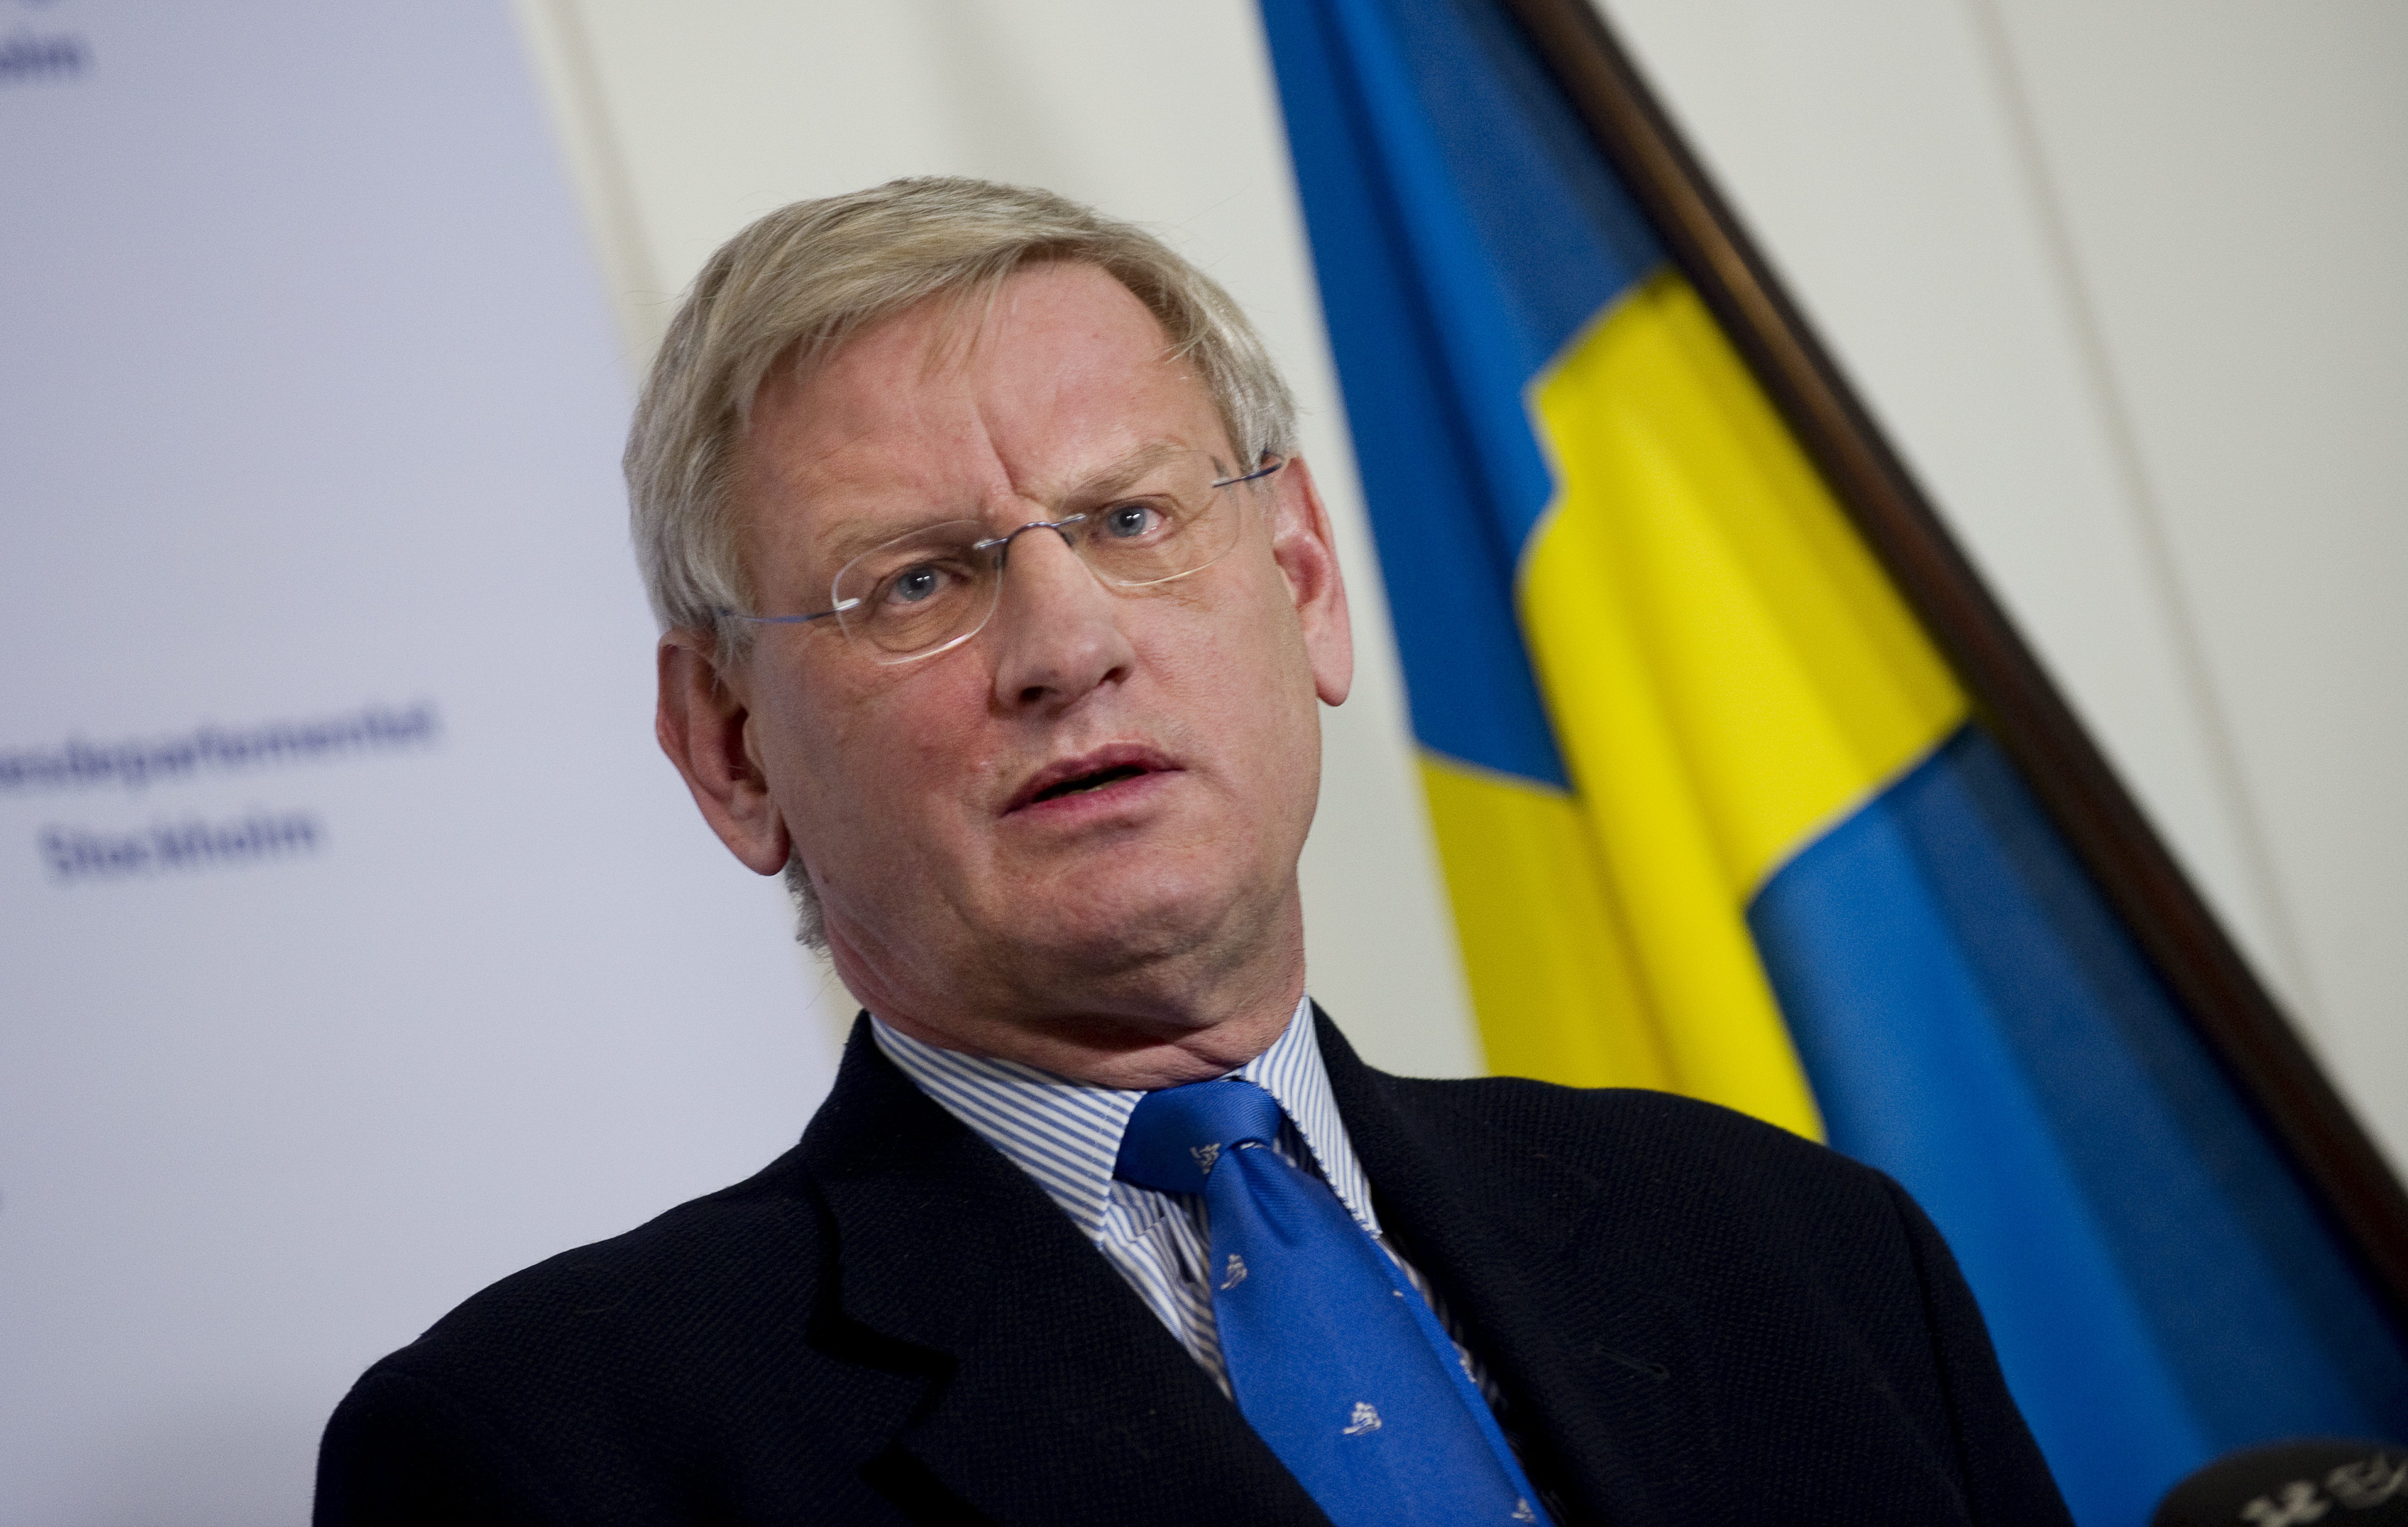 Carl Bildt har fått kritik för att han hamnat i en jävsituation då han tidigare suttit i styrelsen för Lundin Oil, nuvarande Petroleum. Samma företag som Martin Schibbye och Johan Persson var på plats för att granska.